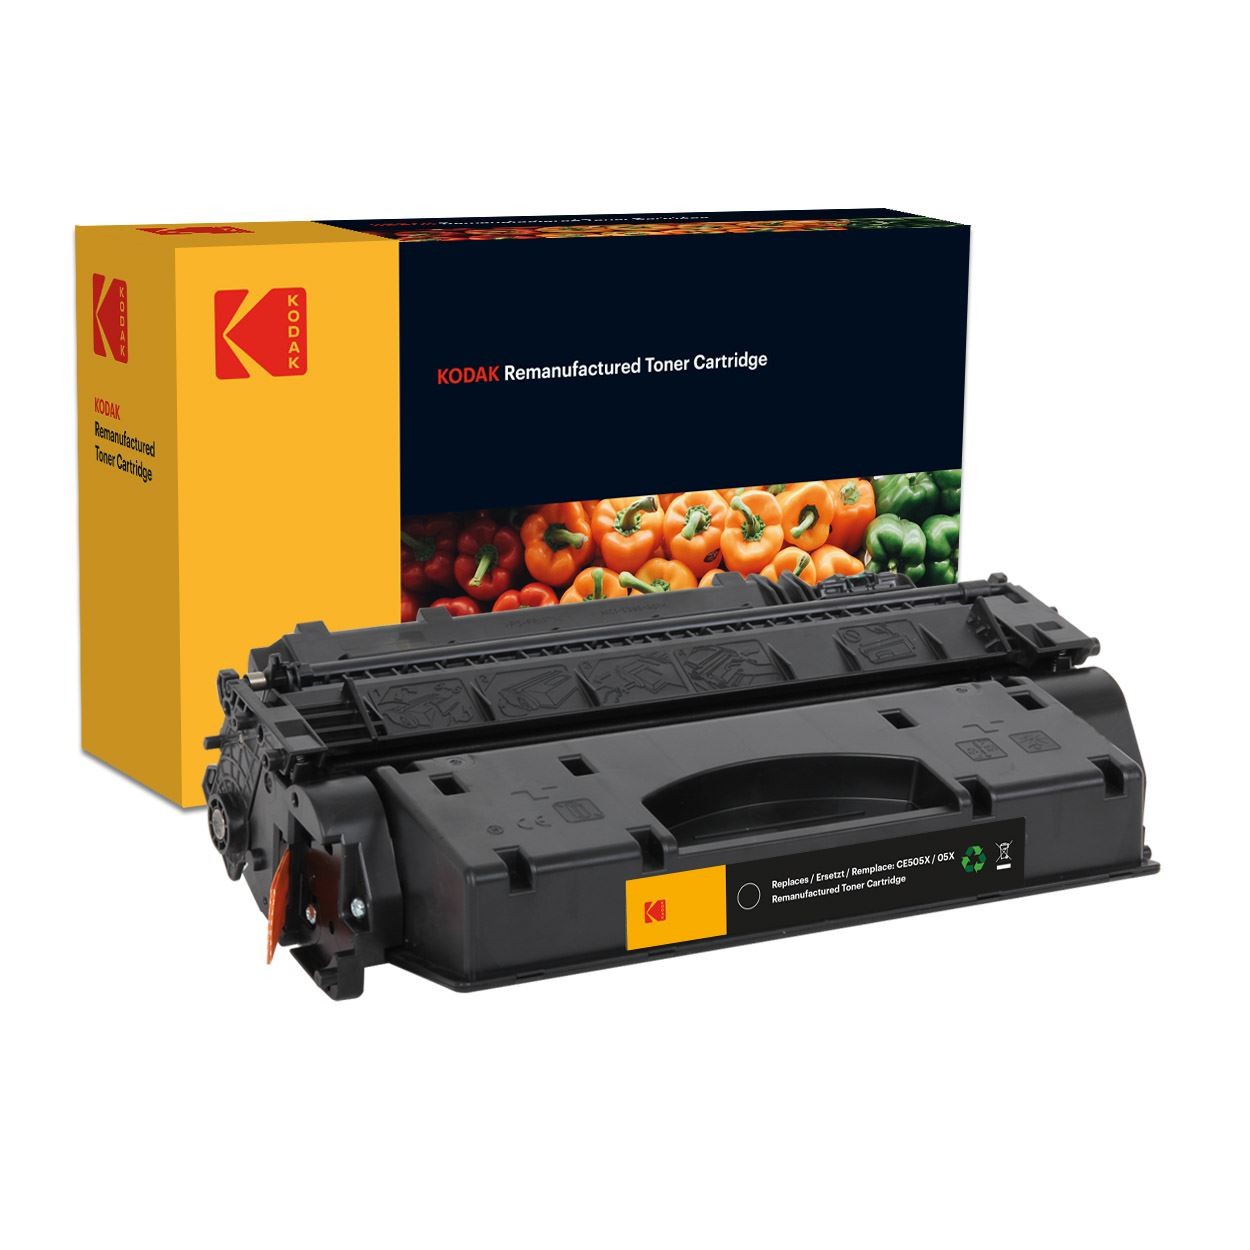 KODAK+Replacement+Toner+Cartridge+for+use+in+HP+LaserJet+P2050%2F+P2055d%2F+P2055dn%2F+P2055x+05X+%2F+CE505X+%2F+Mono+6500+pages